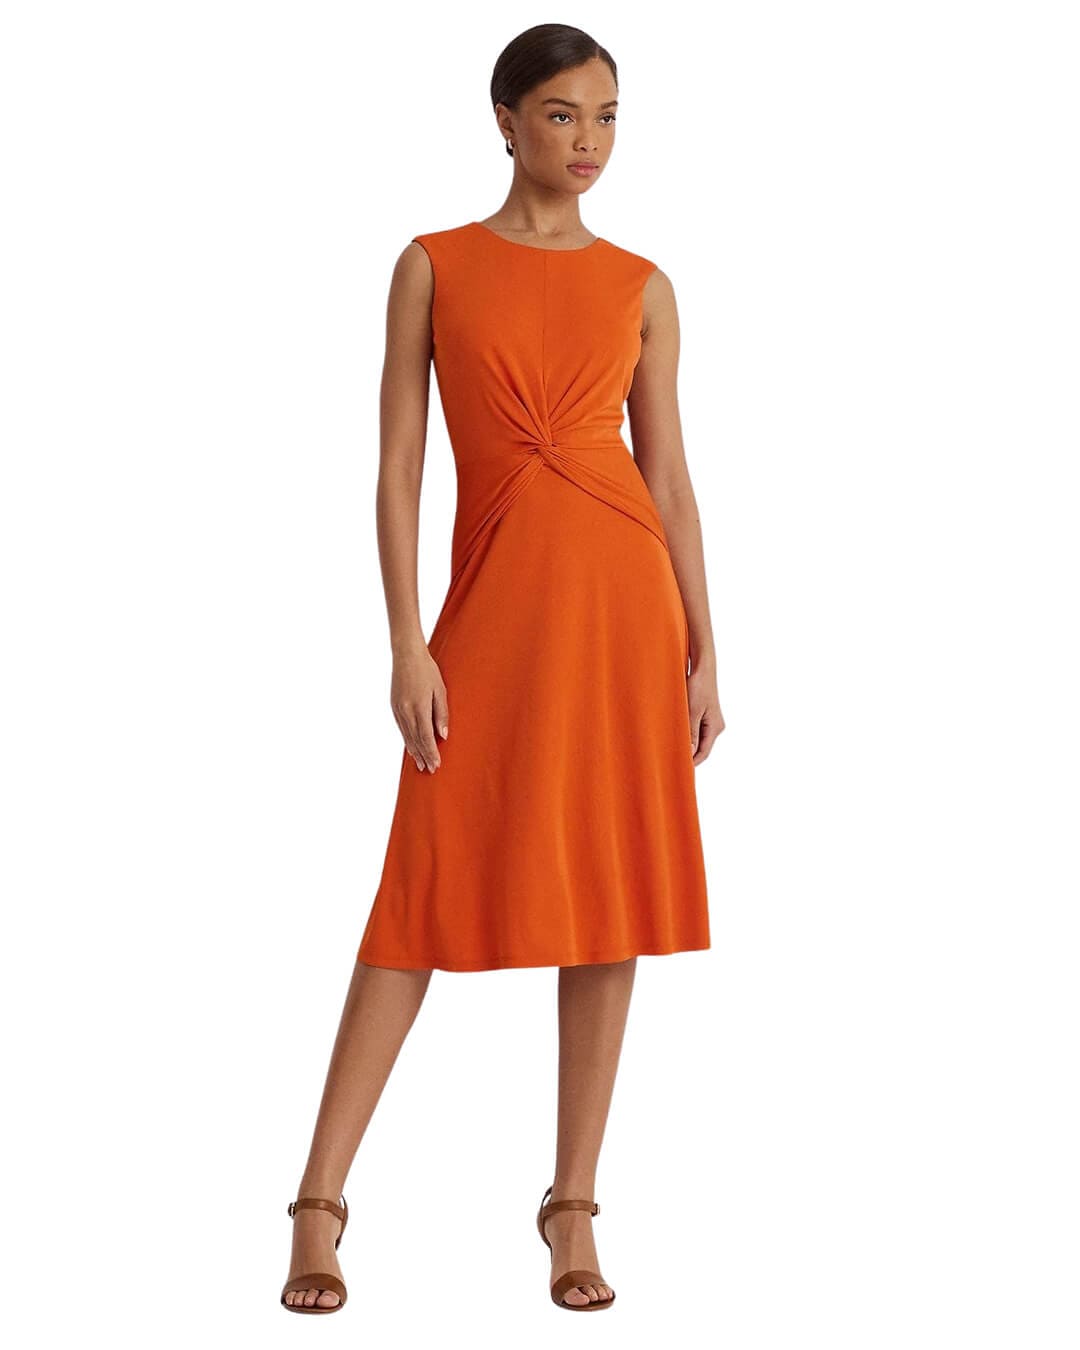 Lauren By Ralph Lauren Dresses Lauren by Ralph Lauren Orange Twist-Front Jersey Dress